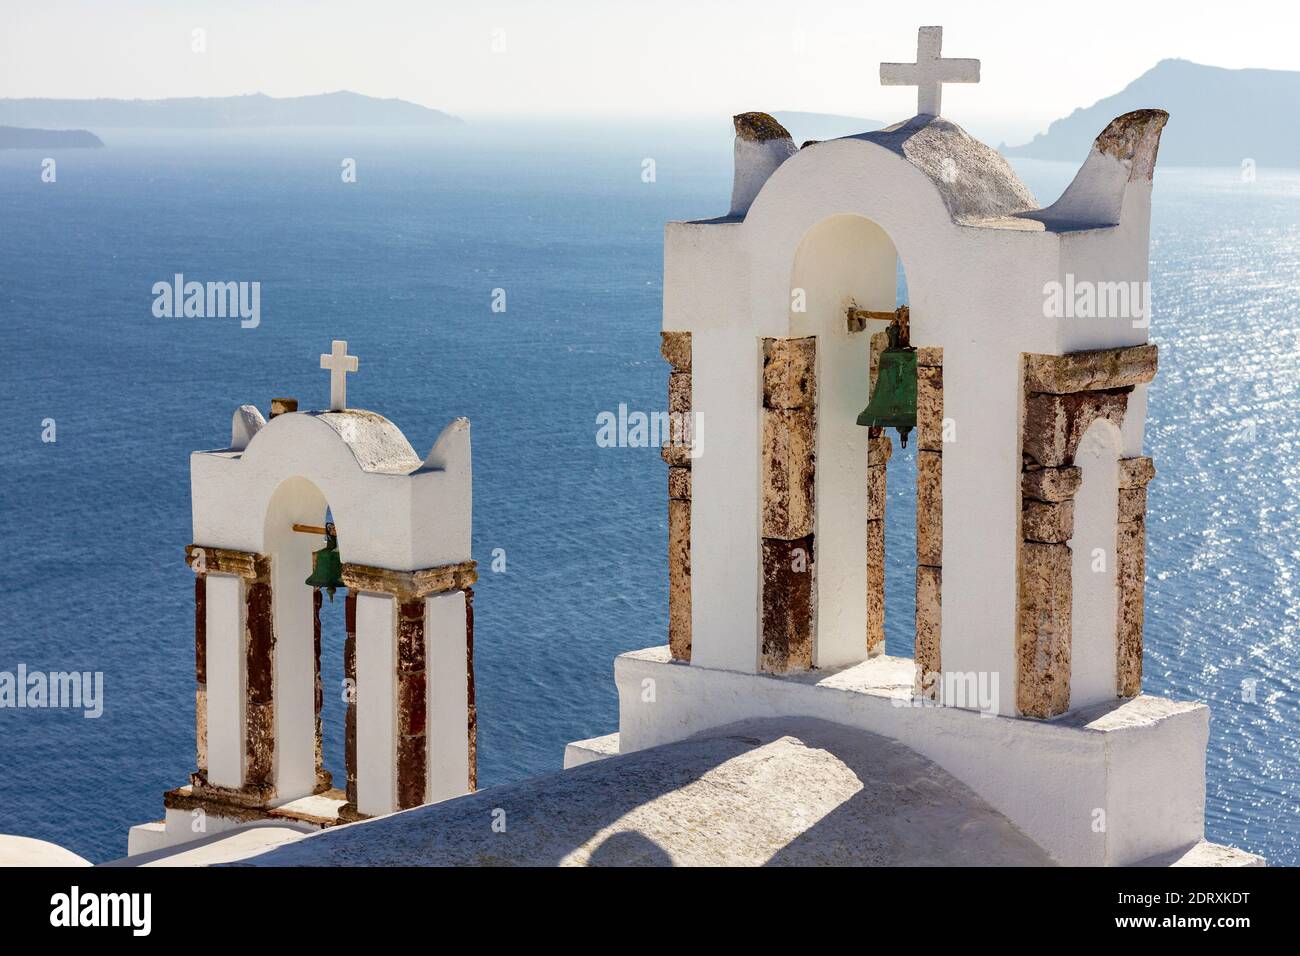 Belfries d'une église orthodoxe grecque qui contemple le bleu profond de la mer Égée, dans le village d'Oia, l'île de Santorin, la mer Égée, la Grèce, l'Europe Banque D'Images